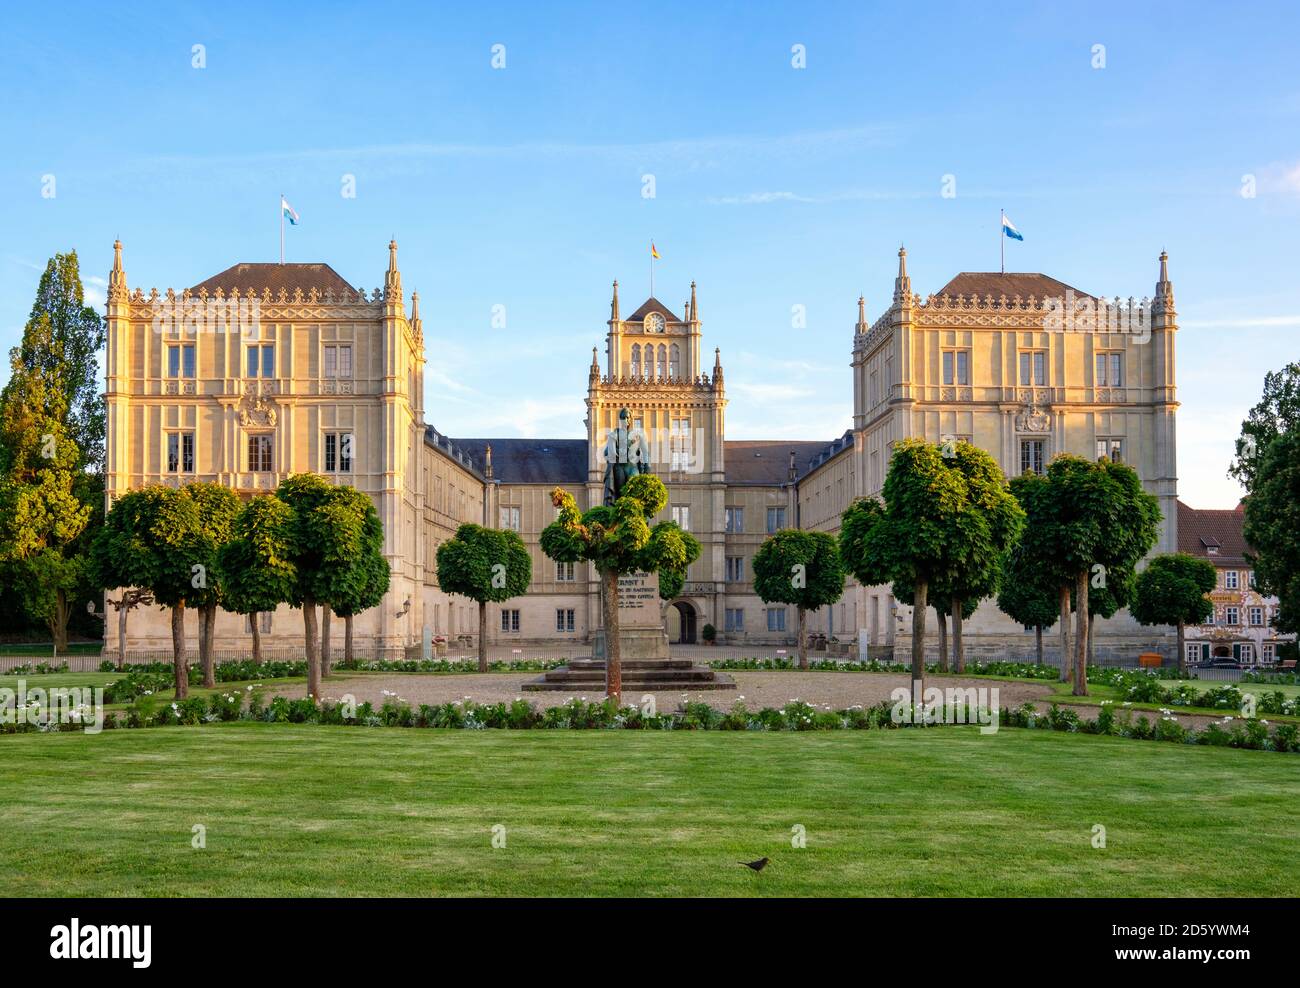 Germany, Bavaria, Coburg, Ehrenburg Palace Stock Photo